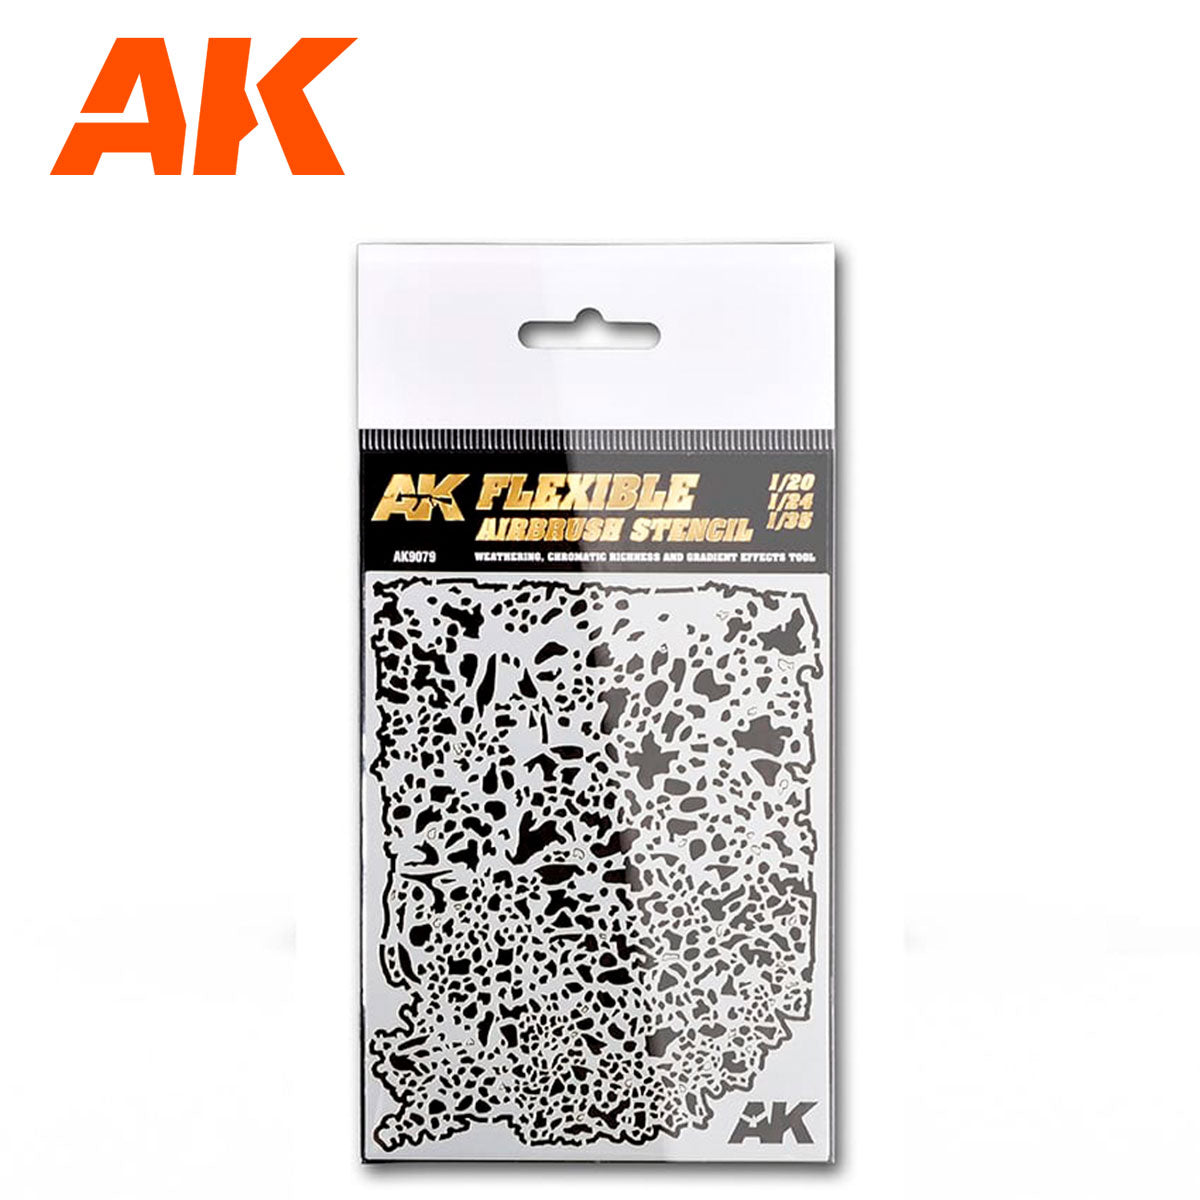 AK9079 - Flexible Airbrush Stencil (1/20-1/24-1/35)